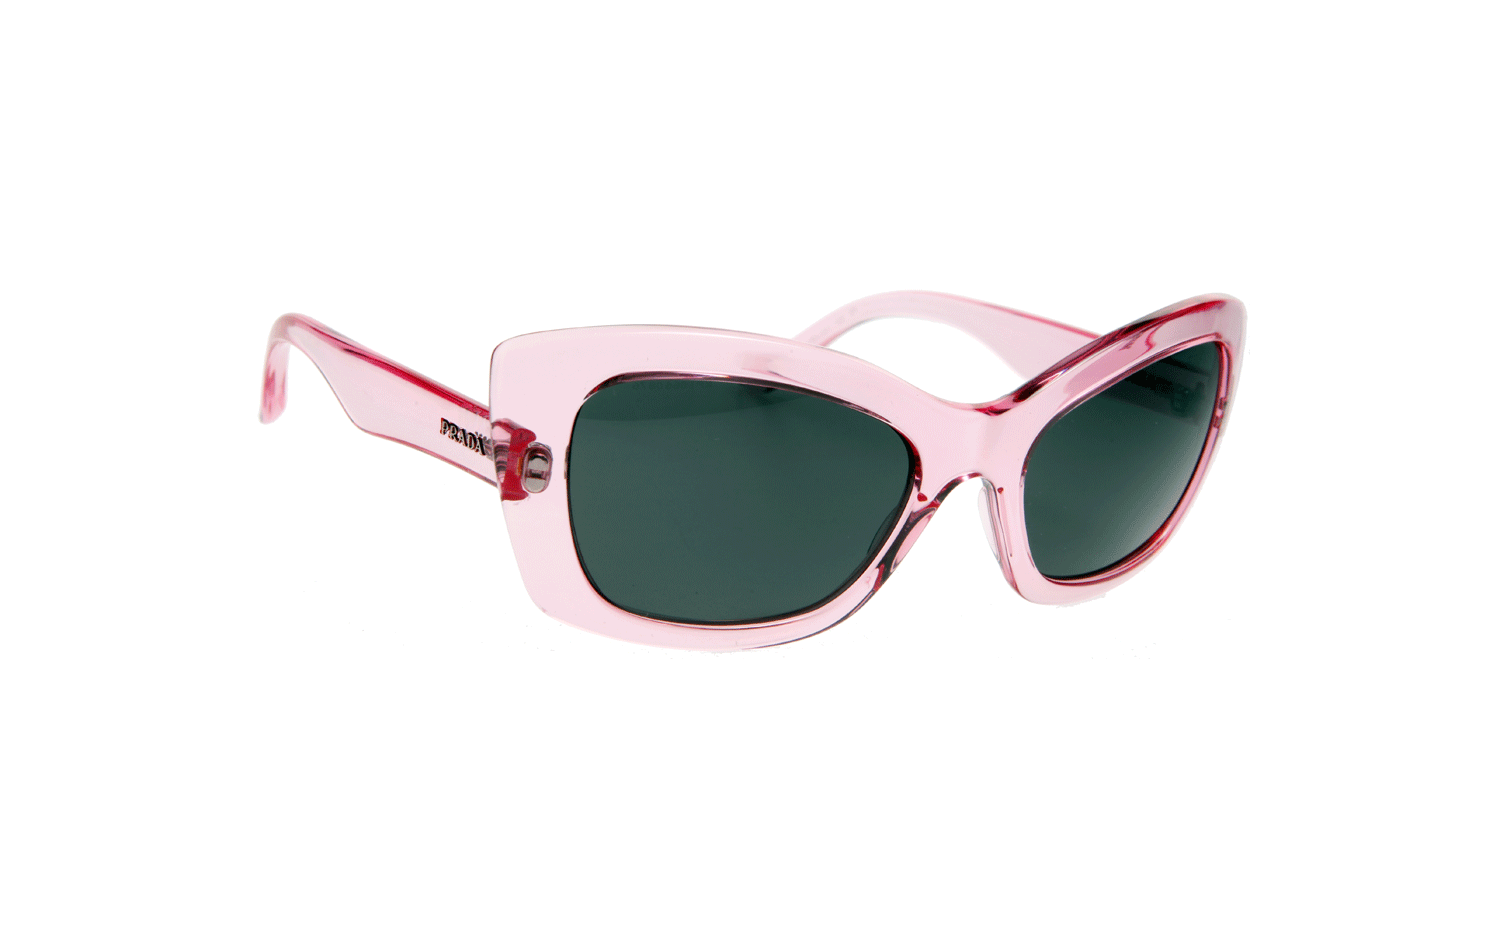 Prada Postcard Cat-eye Sunglasses in Pink